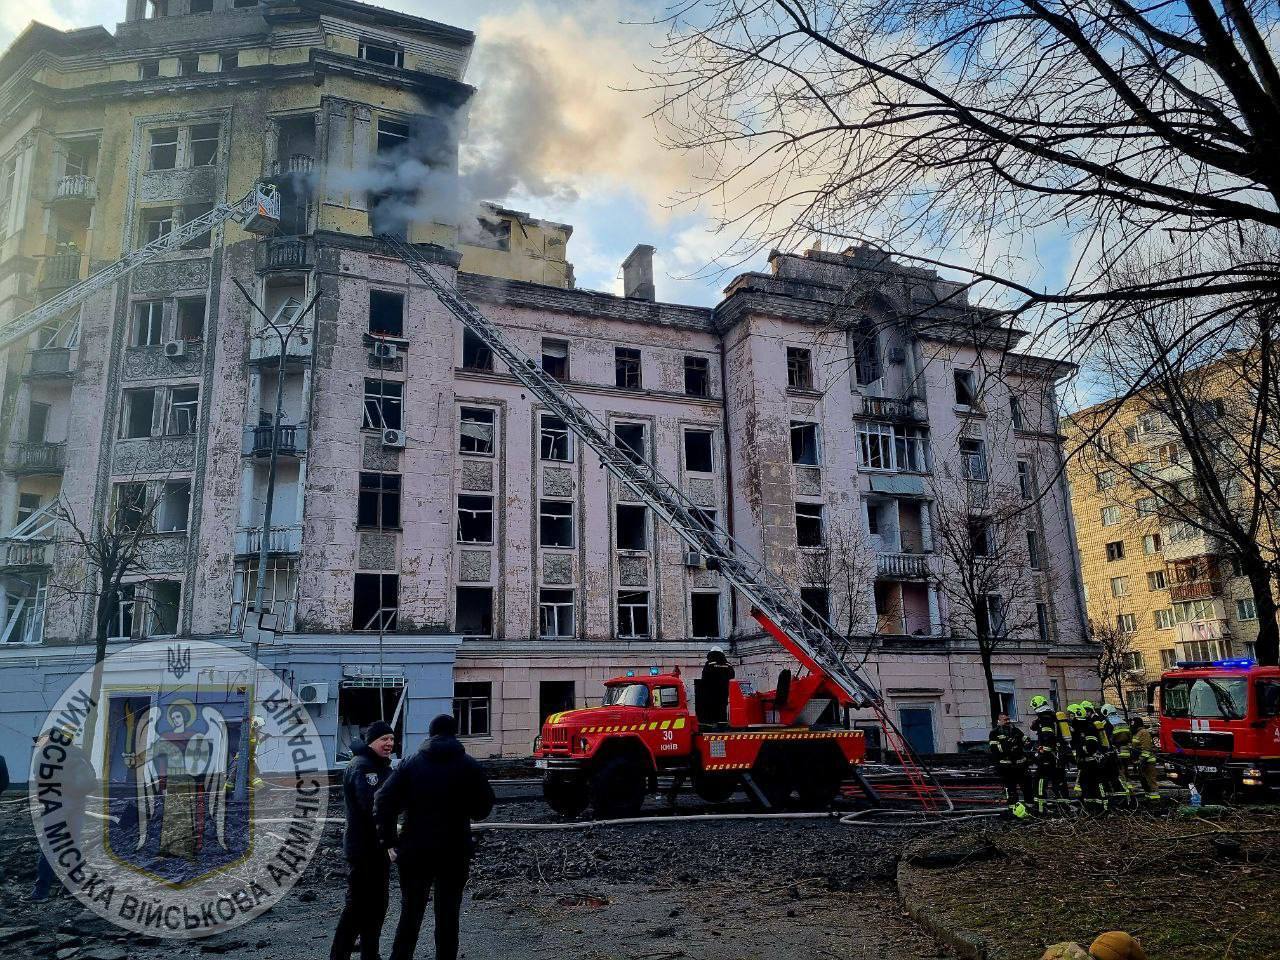 Krater w miejscu uderzenia rakiety i zniszczone budynki: skutki ataku rakietowego na Kijów 21 marca. Zdjęcia